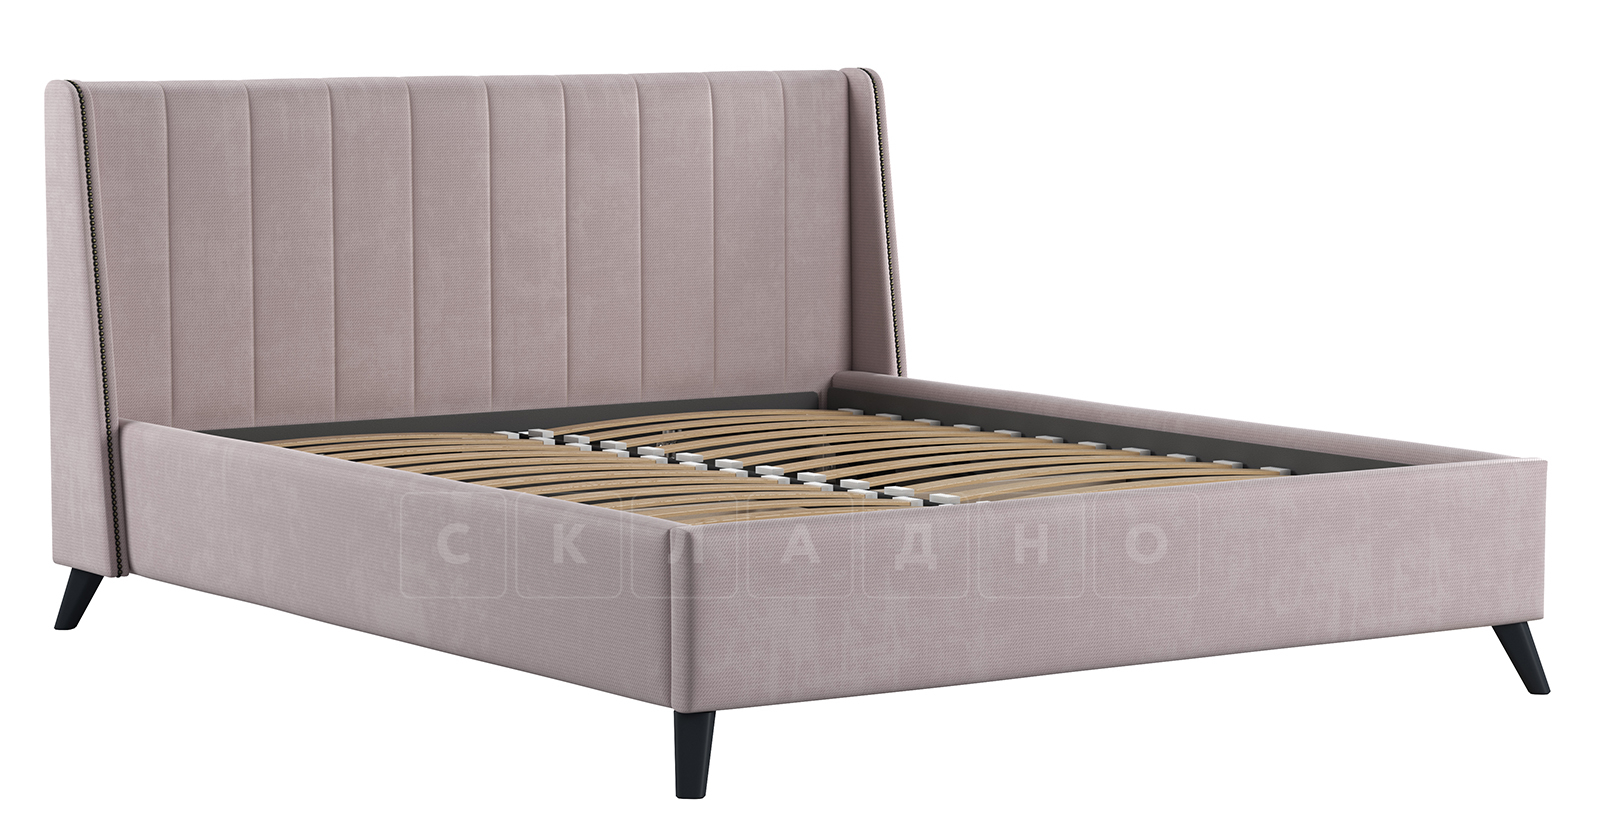 Мягкая кровать Мелисса 160 см велюр ява фото 2 | интернет-магазин Складно